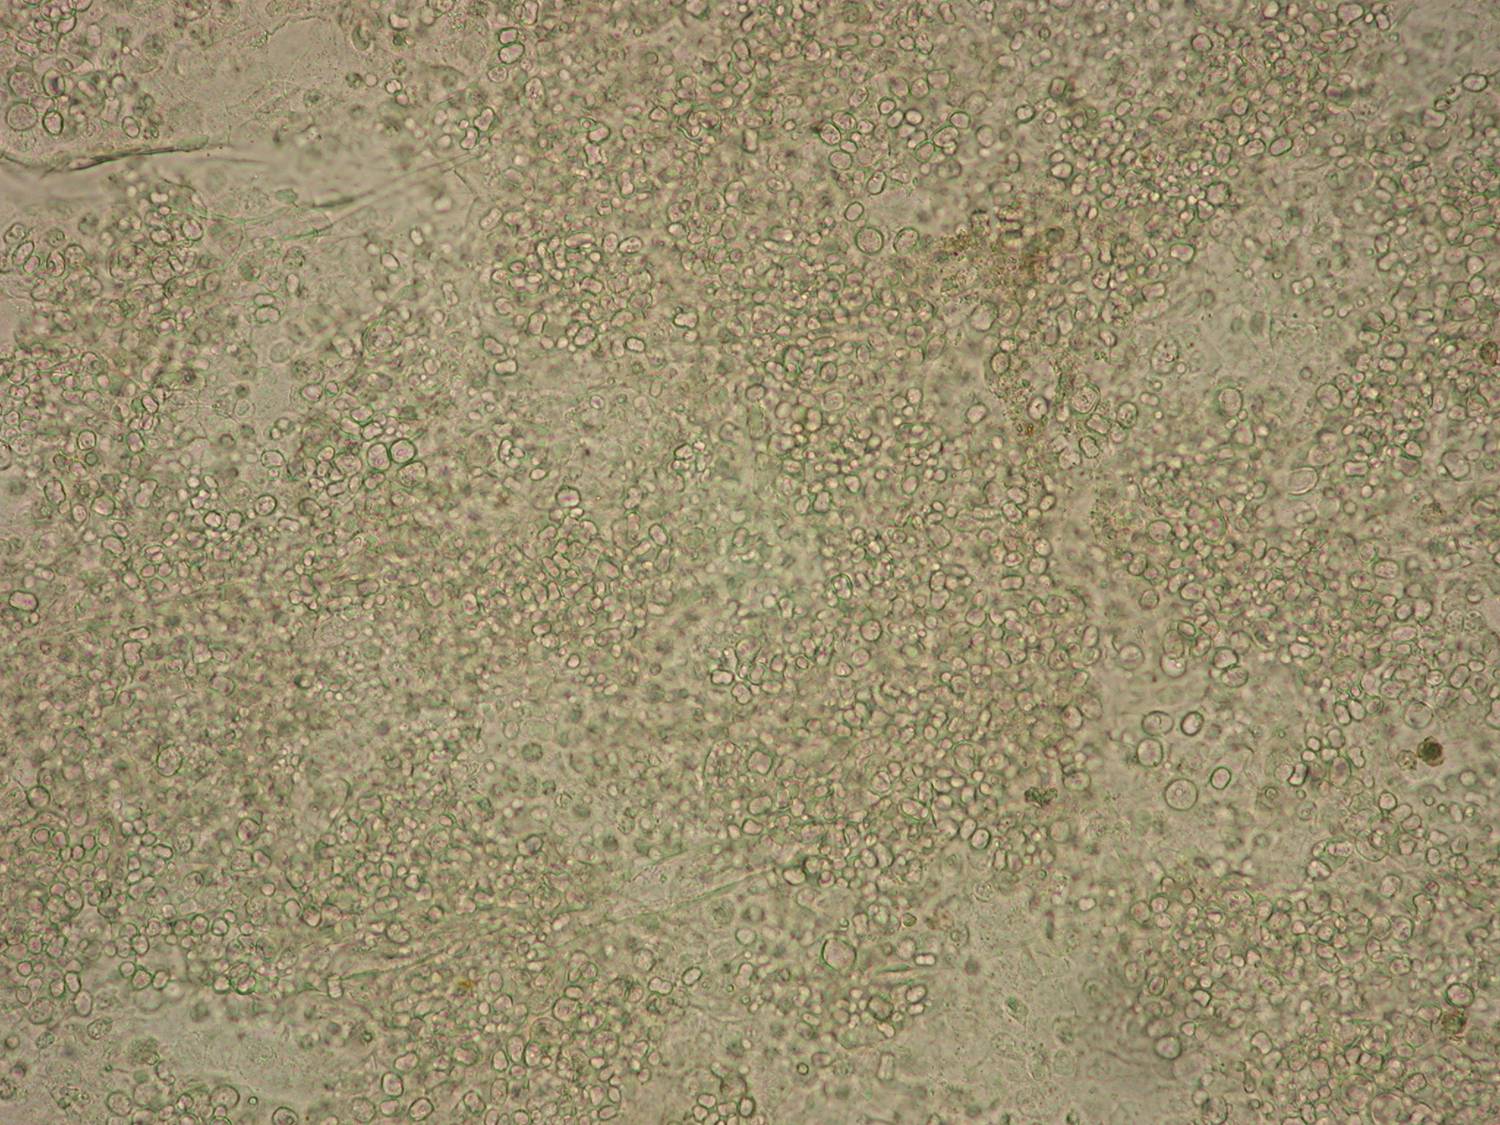 Vista microscópica beige de la piel de una rana infectada con el patógeno Bd